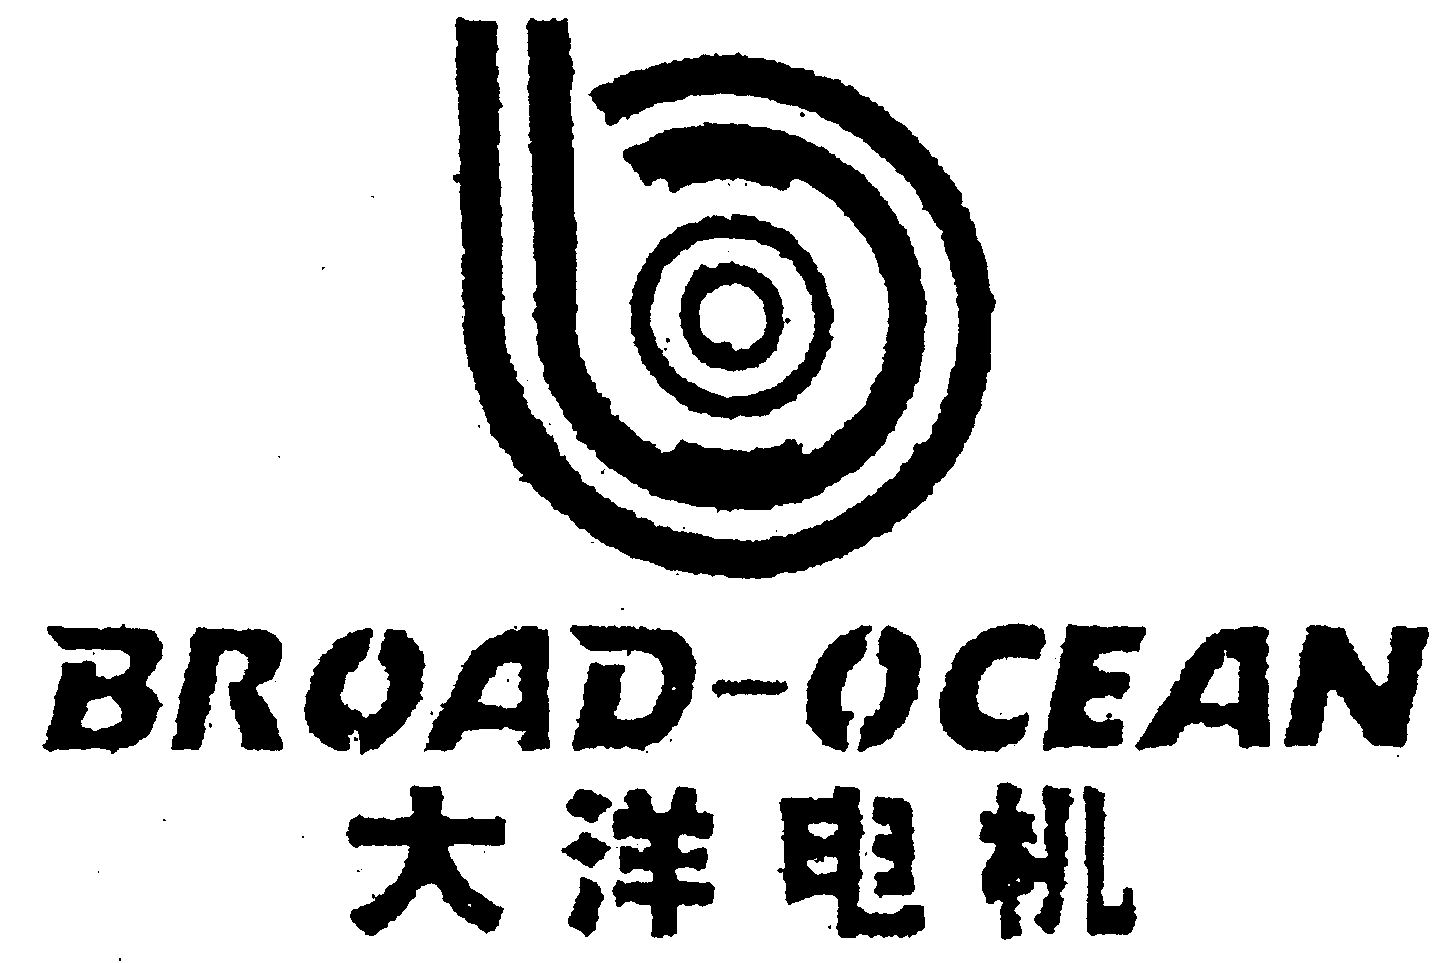  BROAD-OCEAN